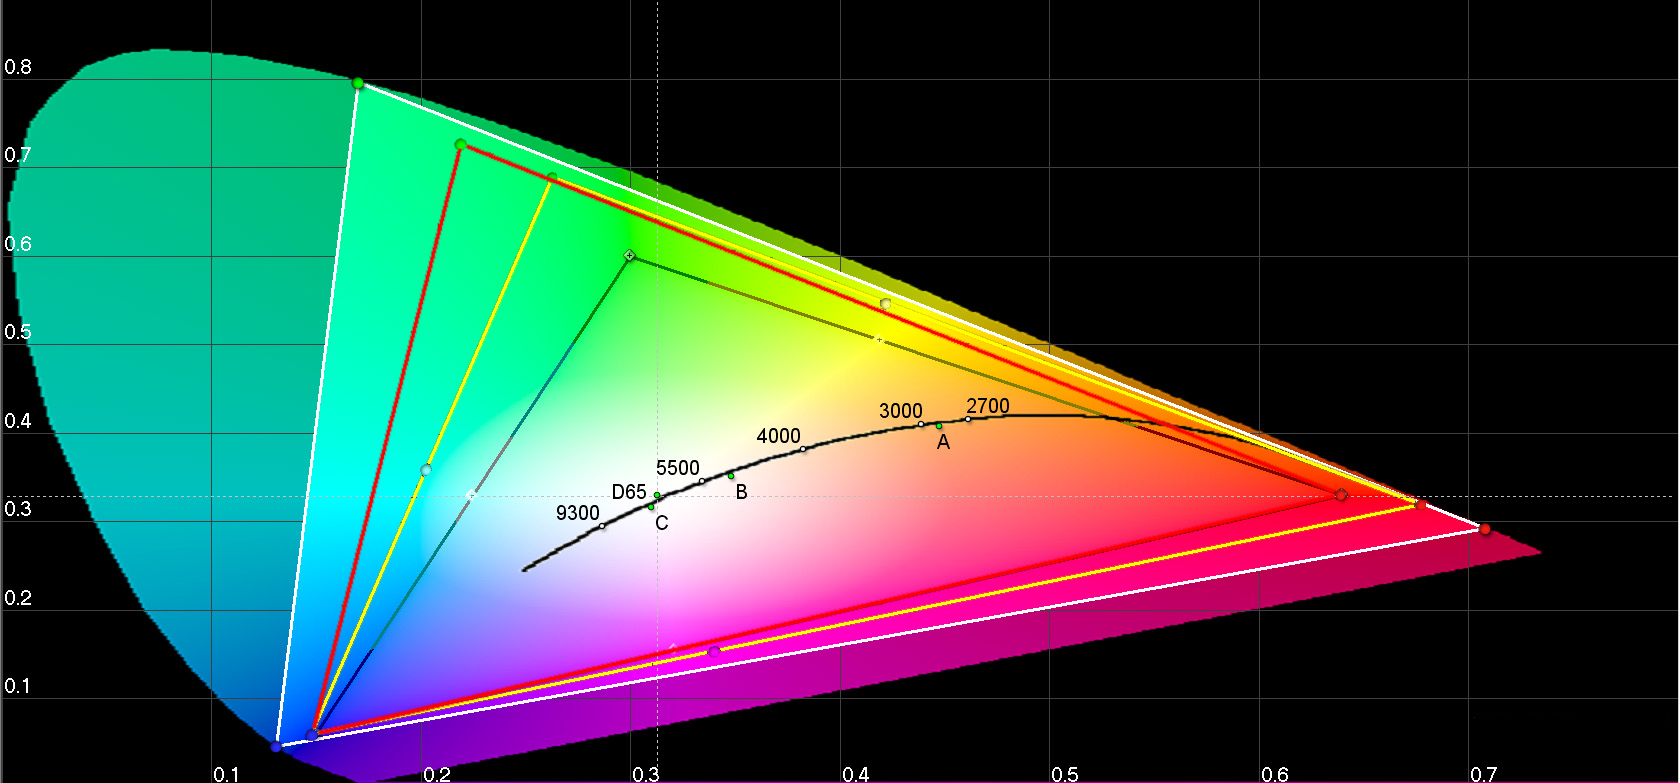 Die bunte Ellipse zeigt das gesamte Farbspektrum, das ein gesundes menschliche Auge wahrnehmen kann. Die Farbigen Dreiecke darin sind typische Farbraummodelle, die für Ultra-High-Definition (Weiß), Adobe RGB (Rot), DCI-Kino (Gelb) und HDTV (Schwarz) verwendet werden. 